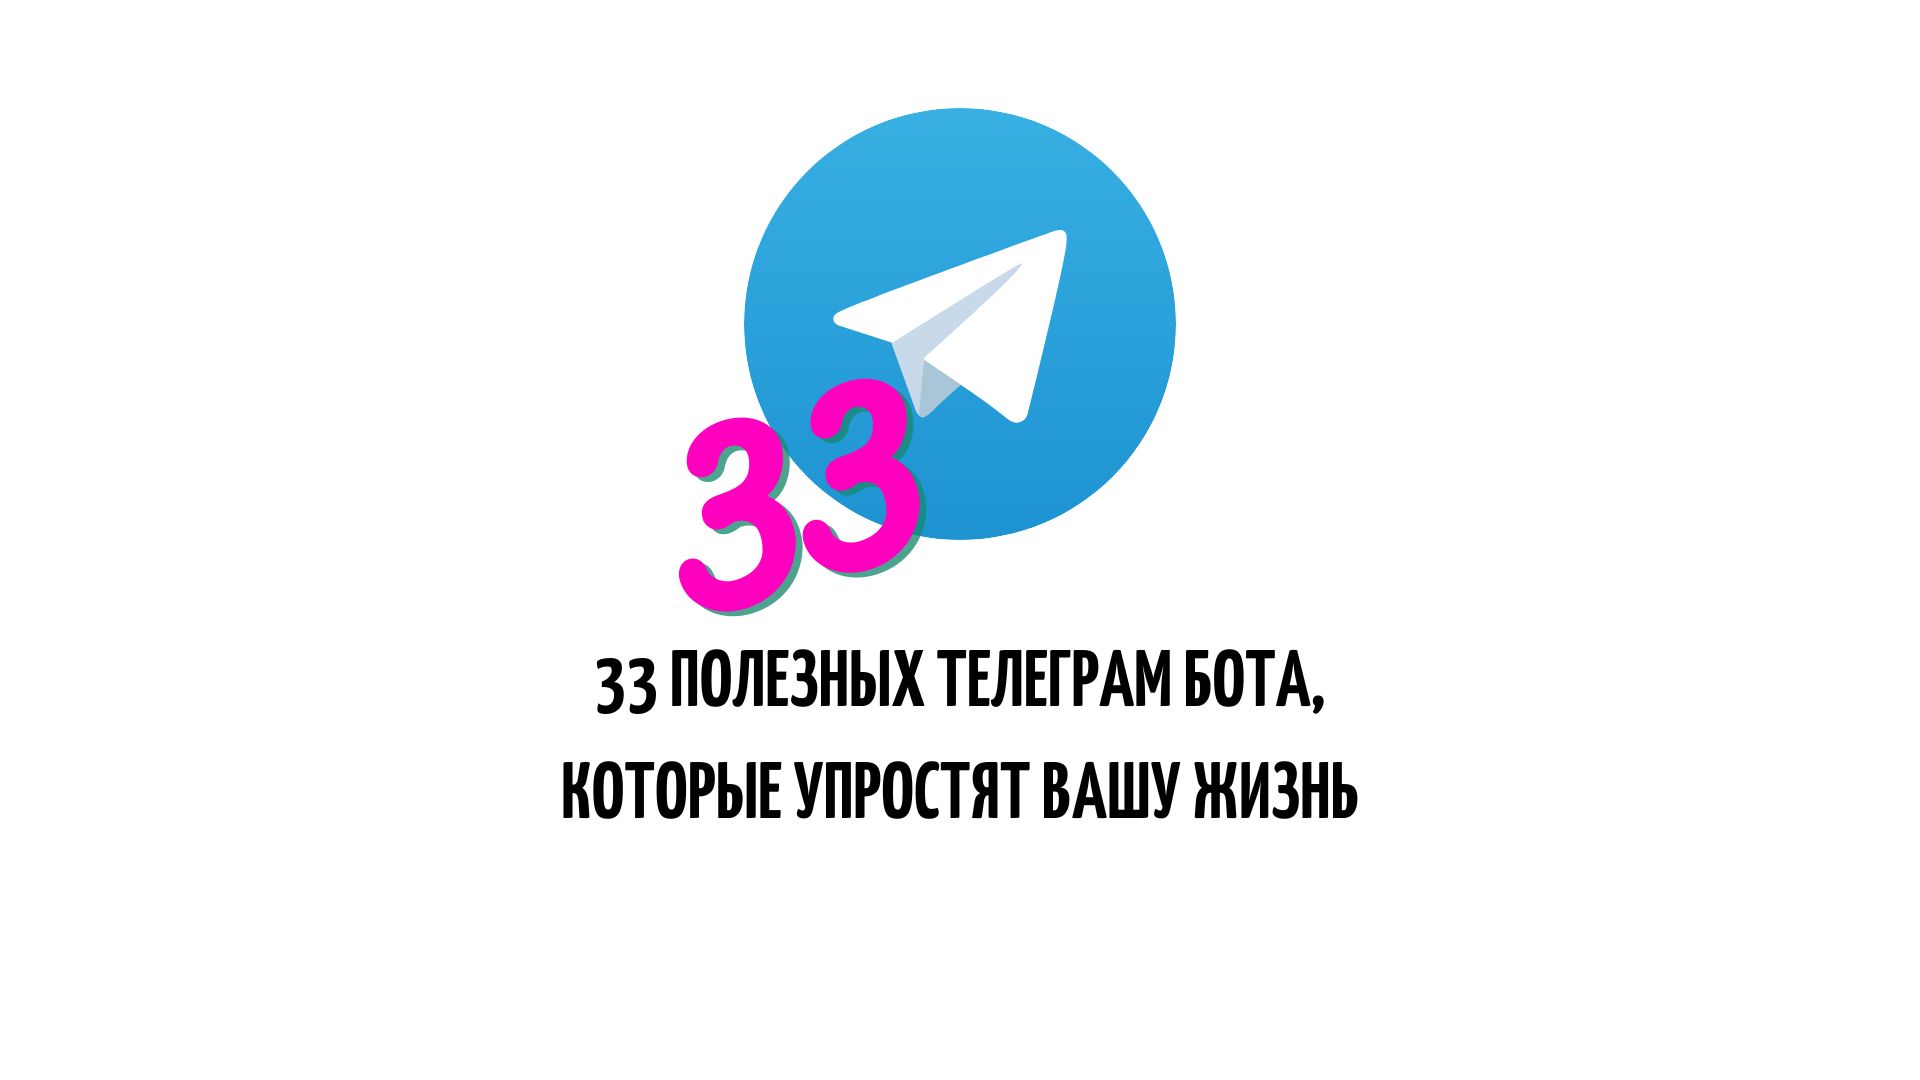 33 полезных бота в телеграм, которые существенно упростят вашу жизнь